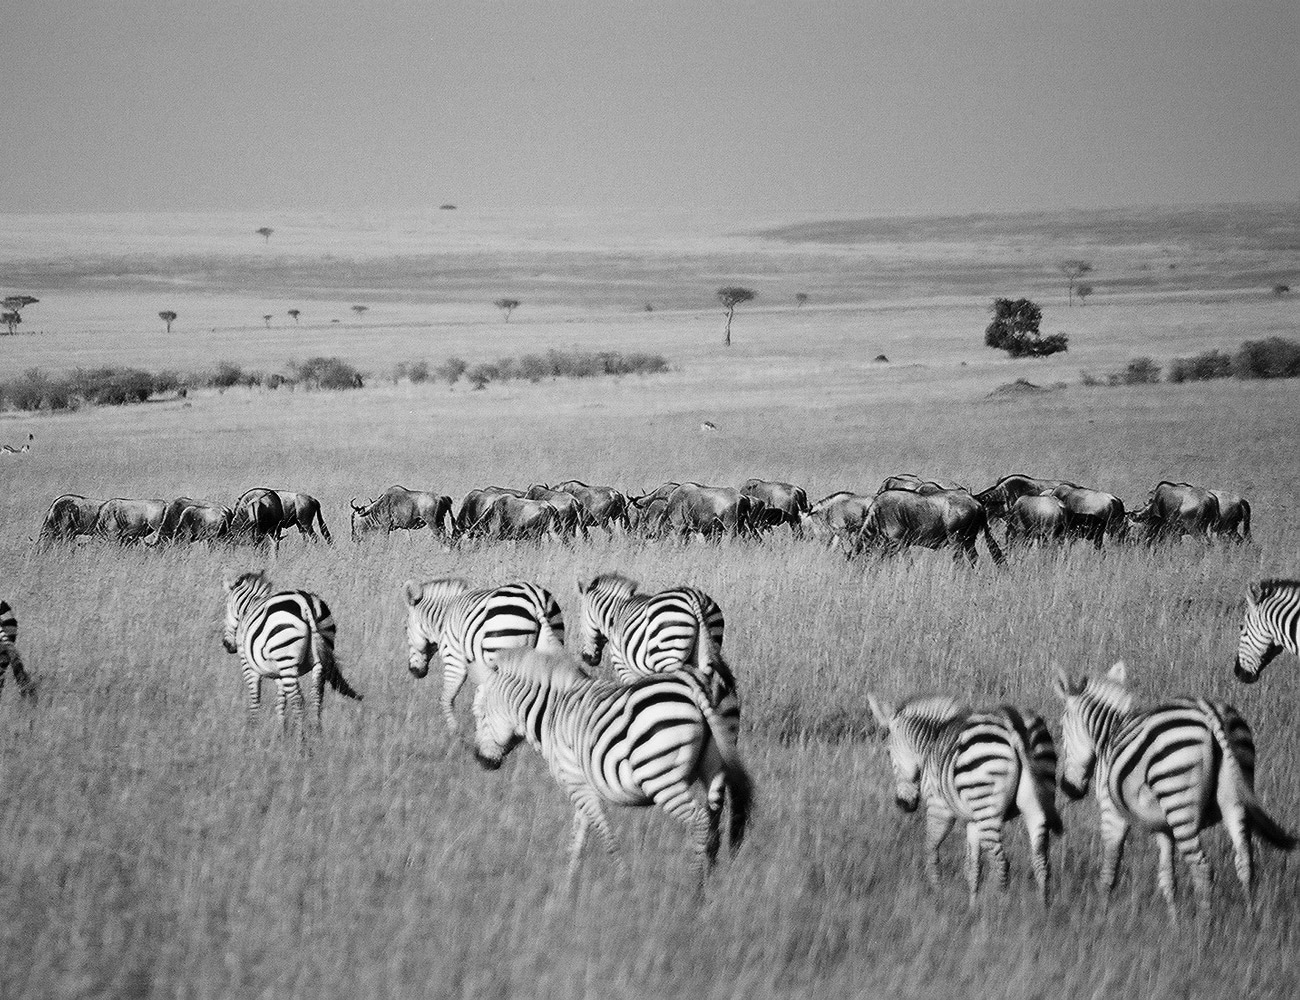 Maasai Mara Reserve Tour with G Adventures